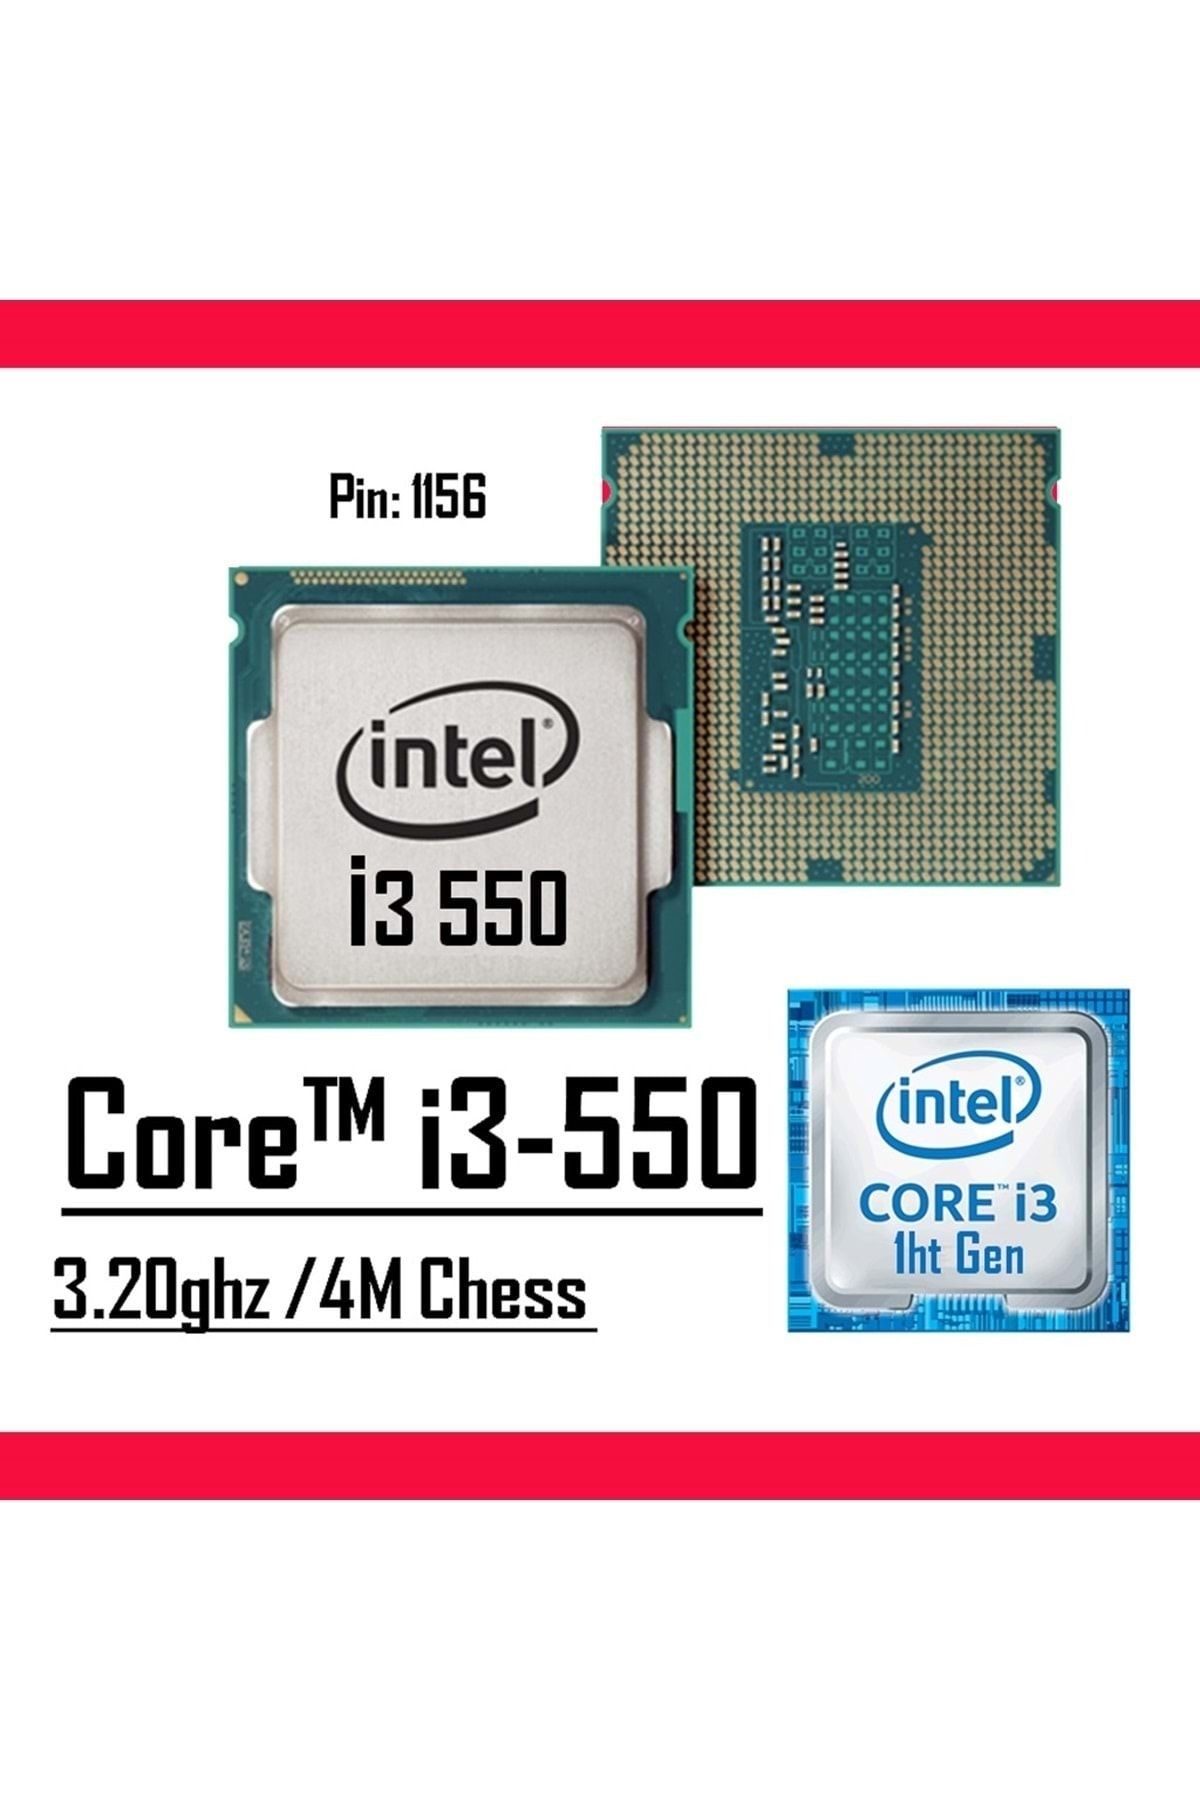 Intel ® Core™ i3-550 4M Cache 3.20 GHz LGA 1156